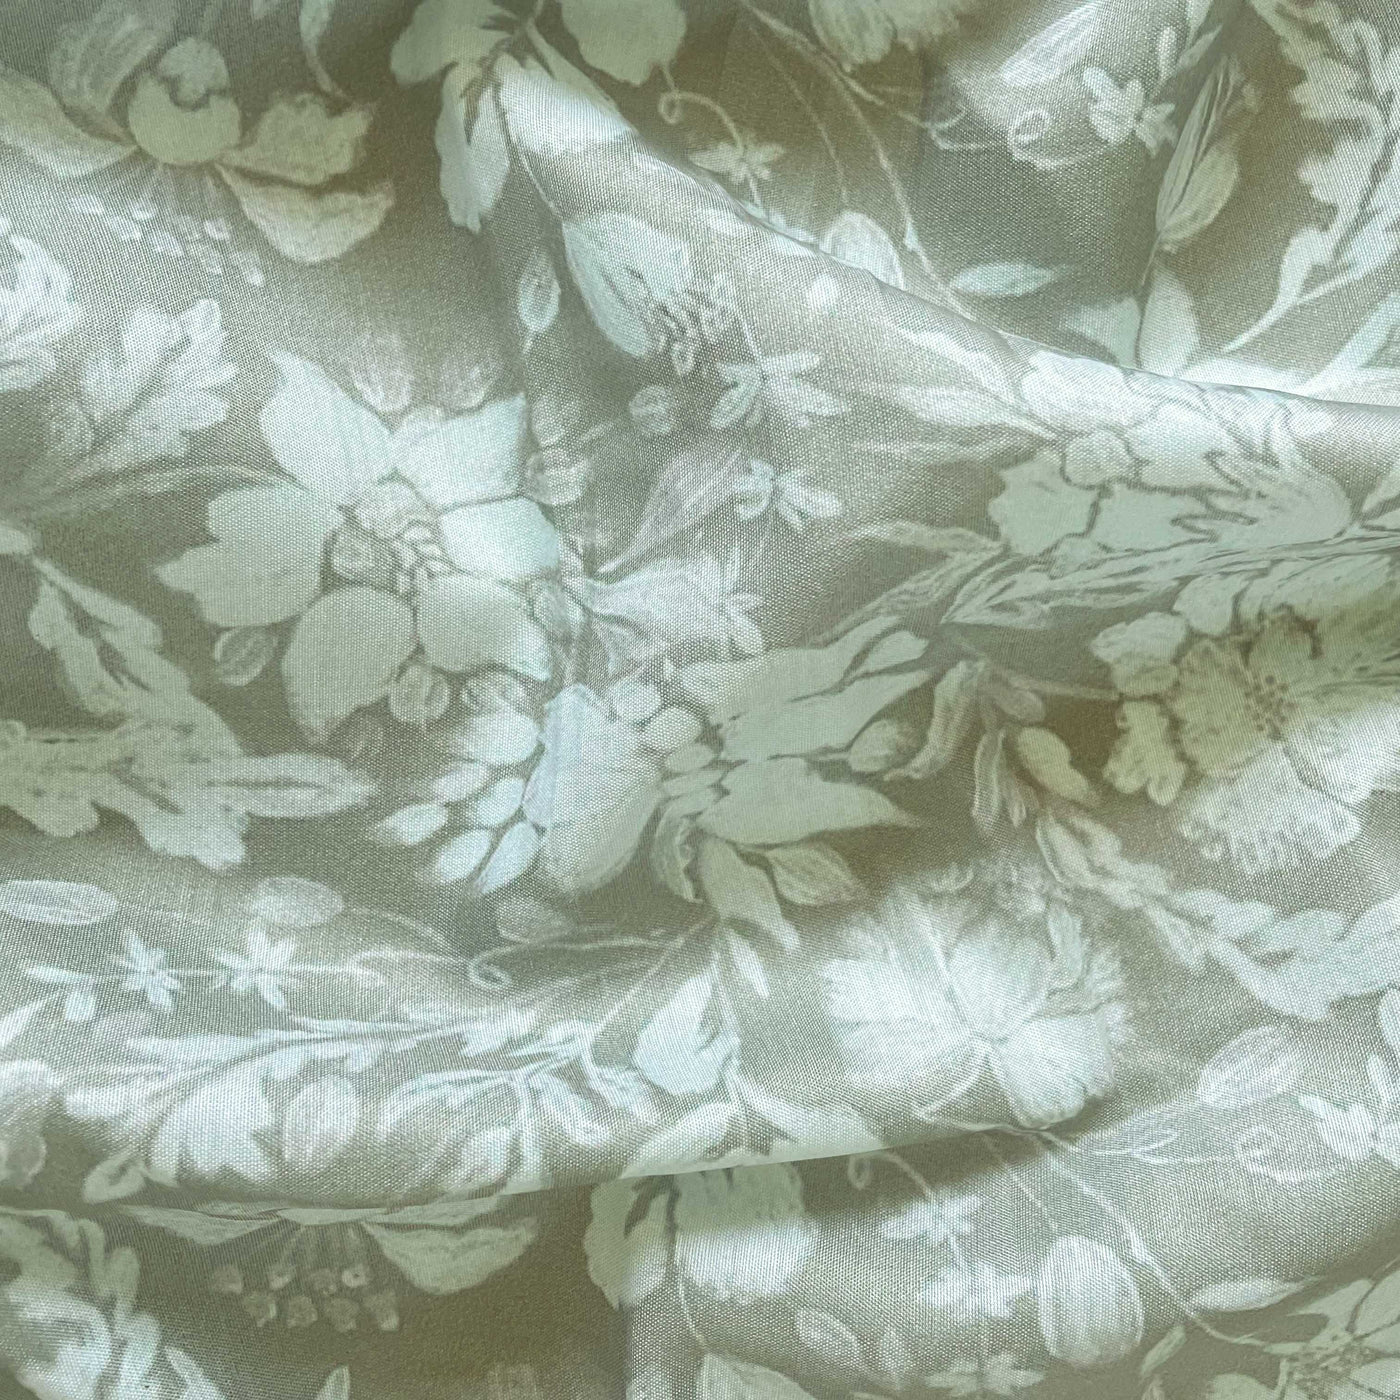 Digital Printed Muslin Fabric Fabric Dusty Green Garden of Daisies Printed Muslin Fabric (Width 45 Inches)